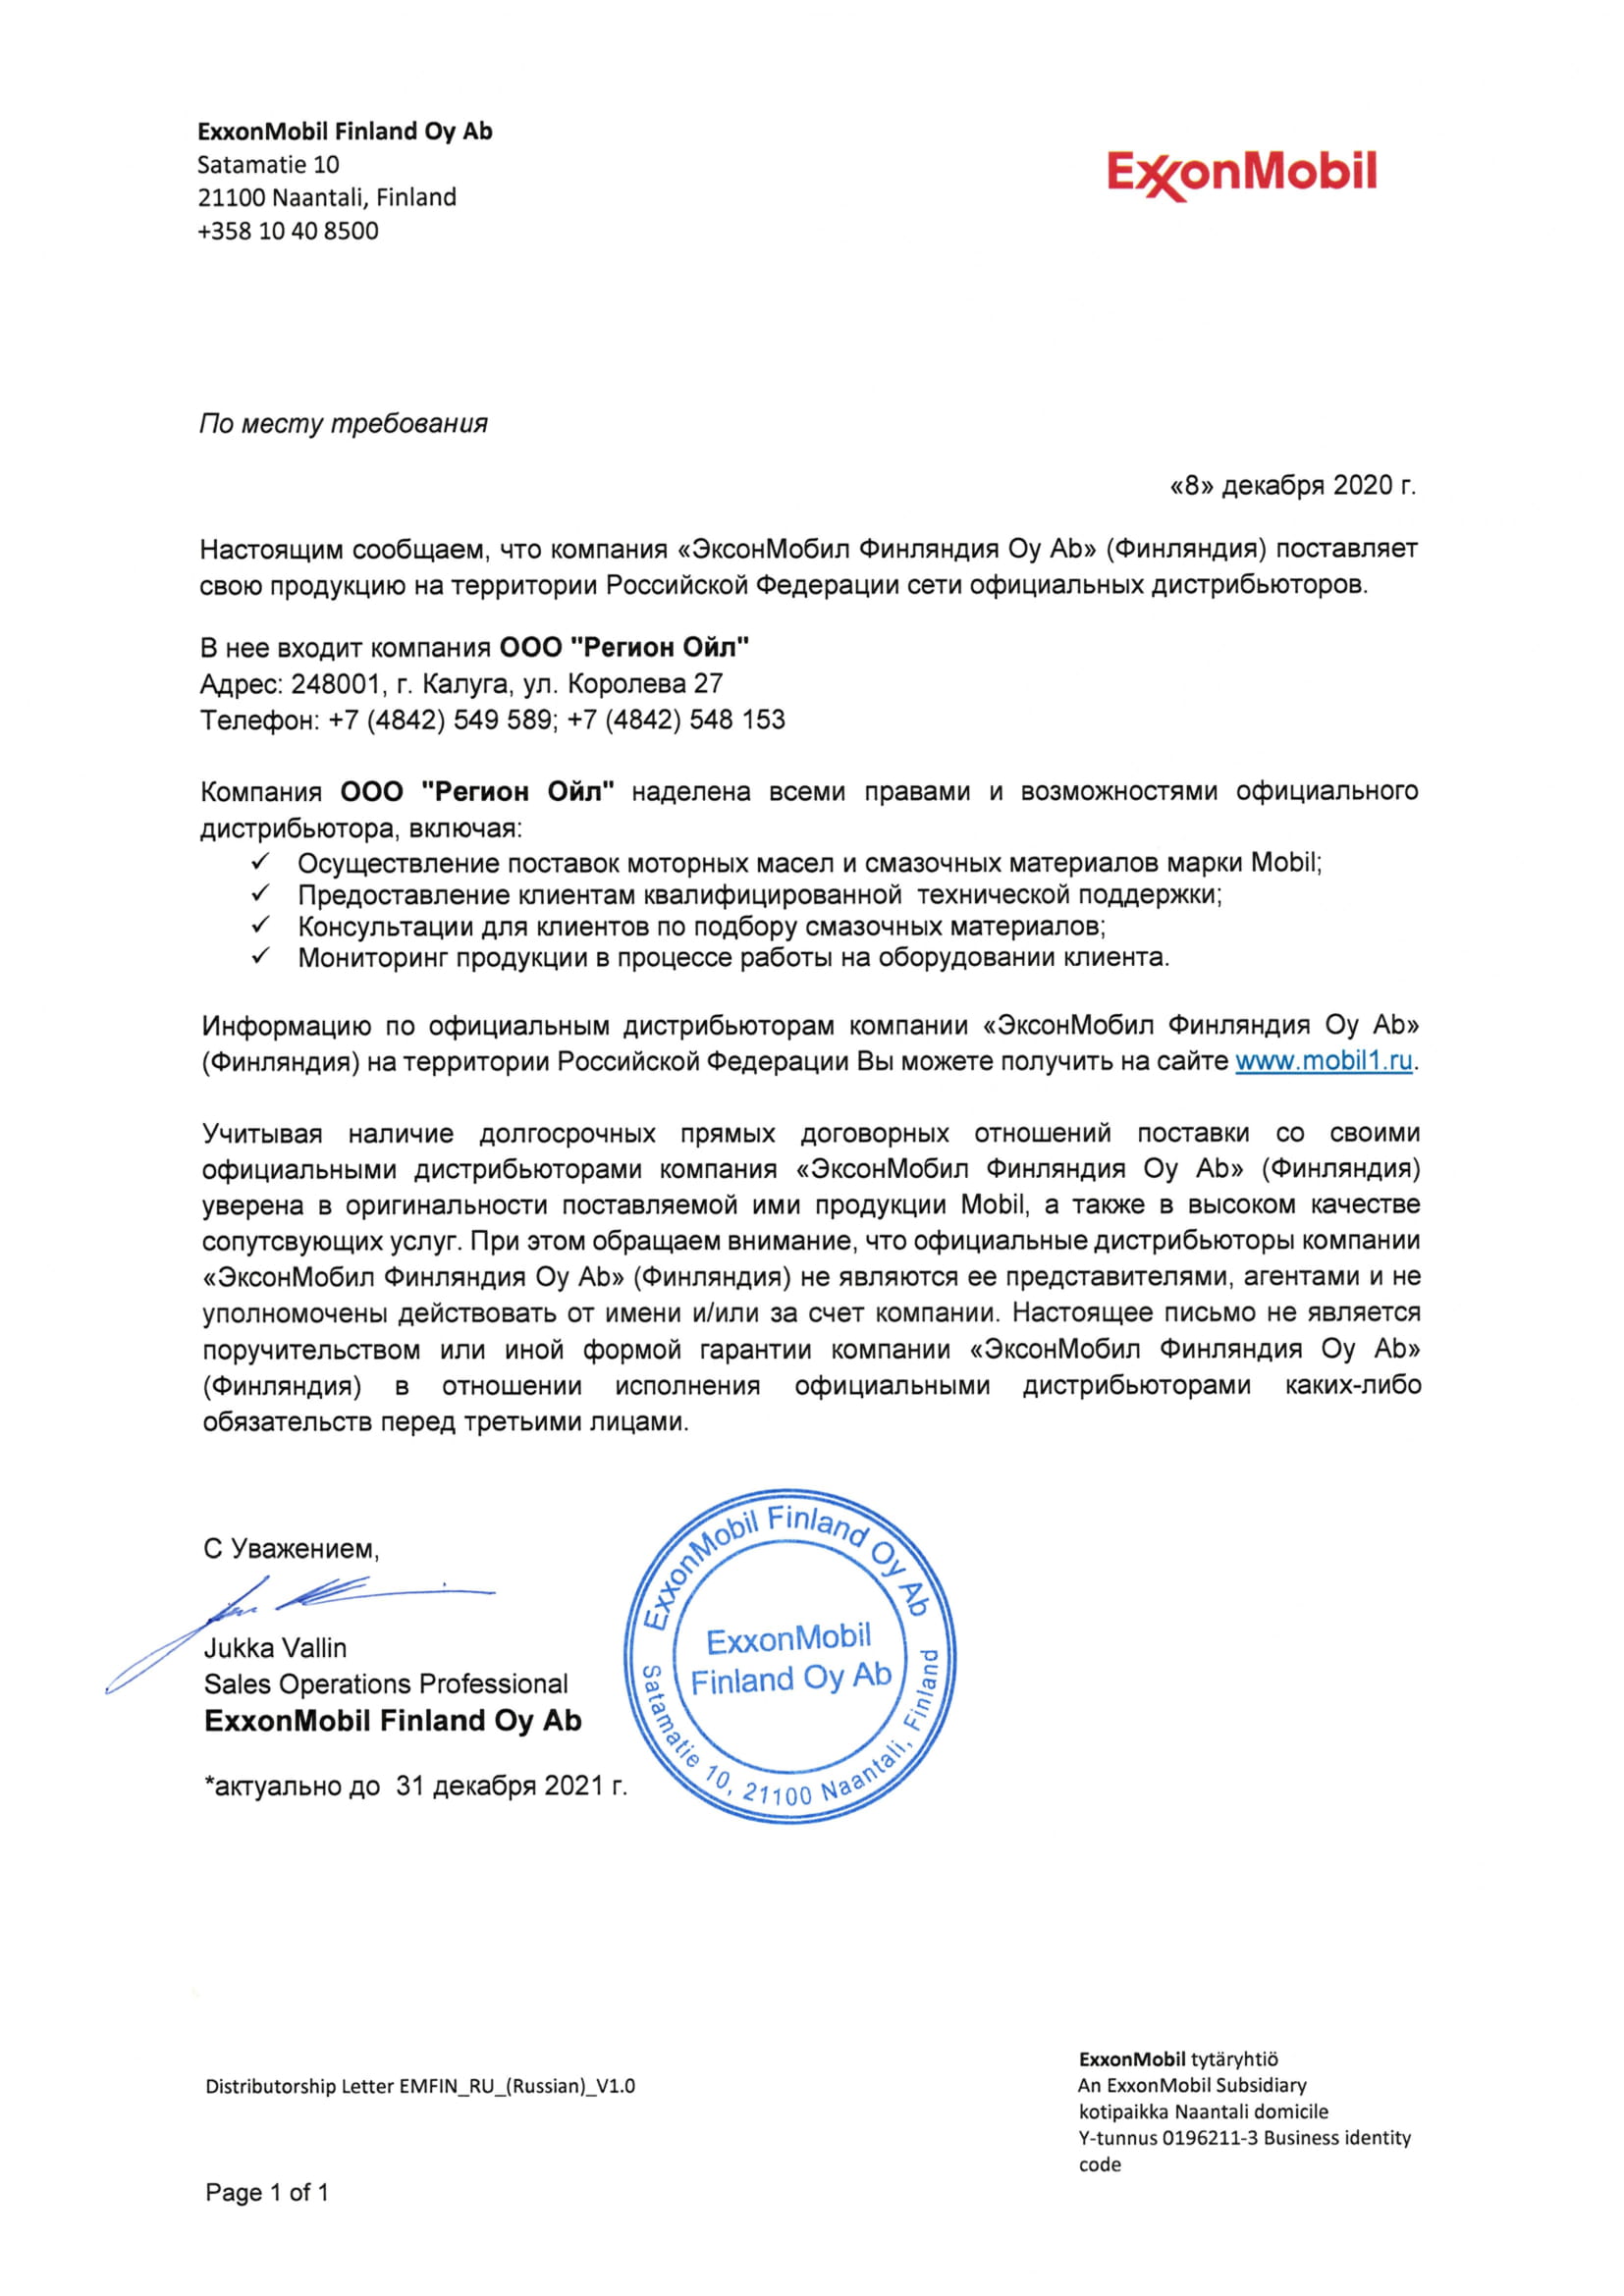 Сертификат дистрибьютора ExxonMobil